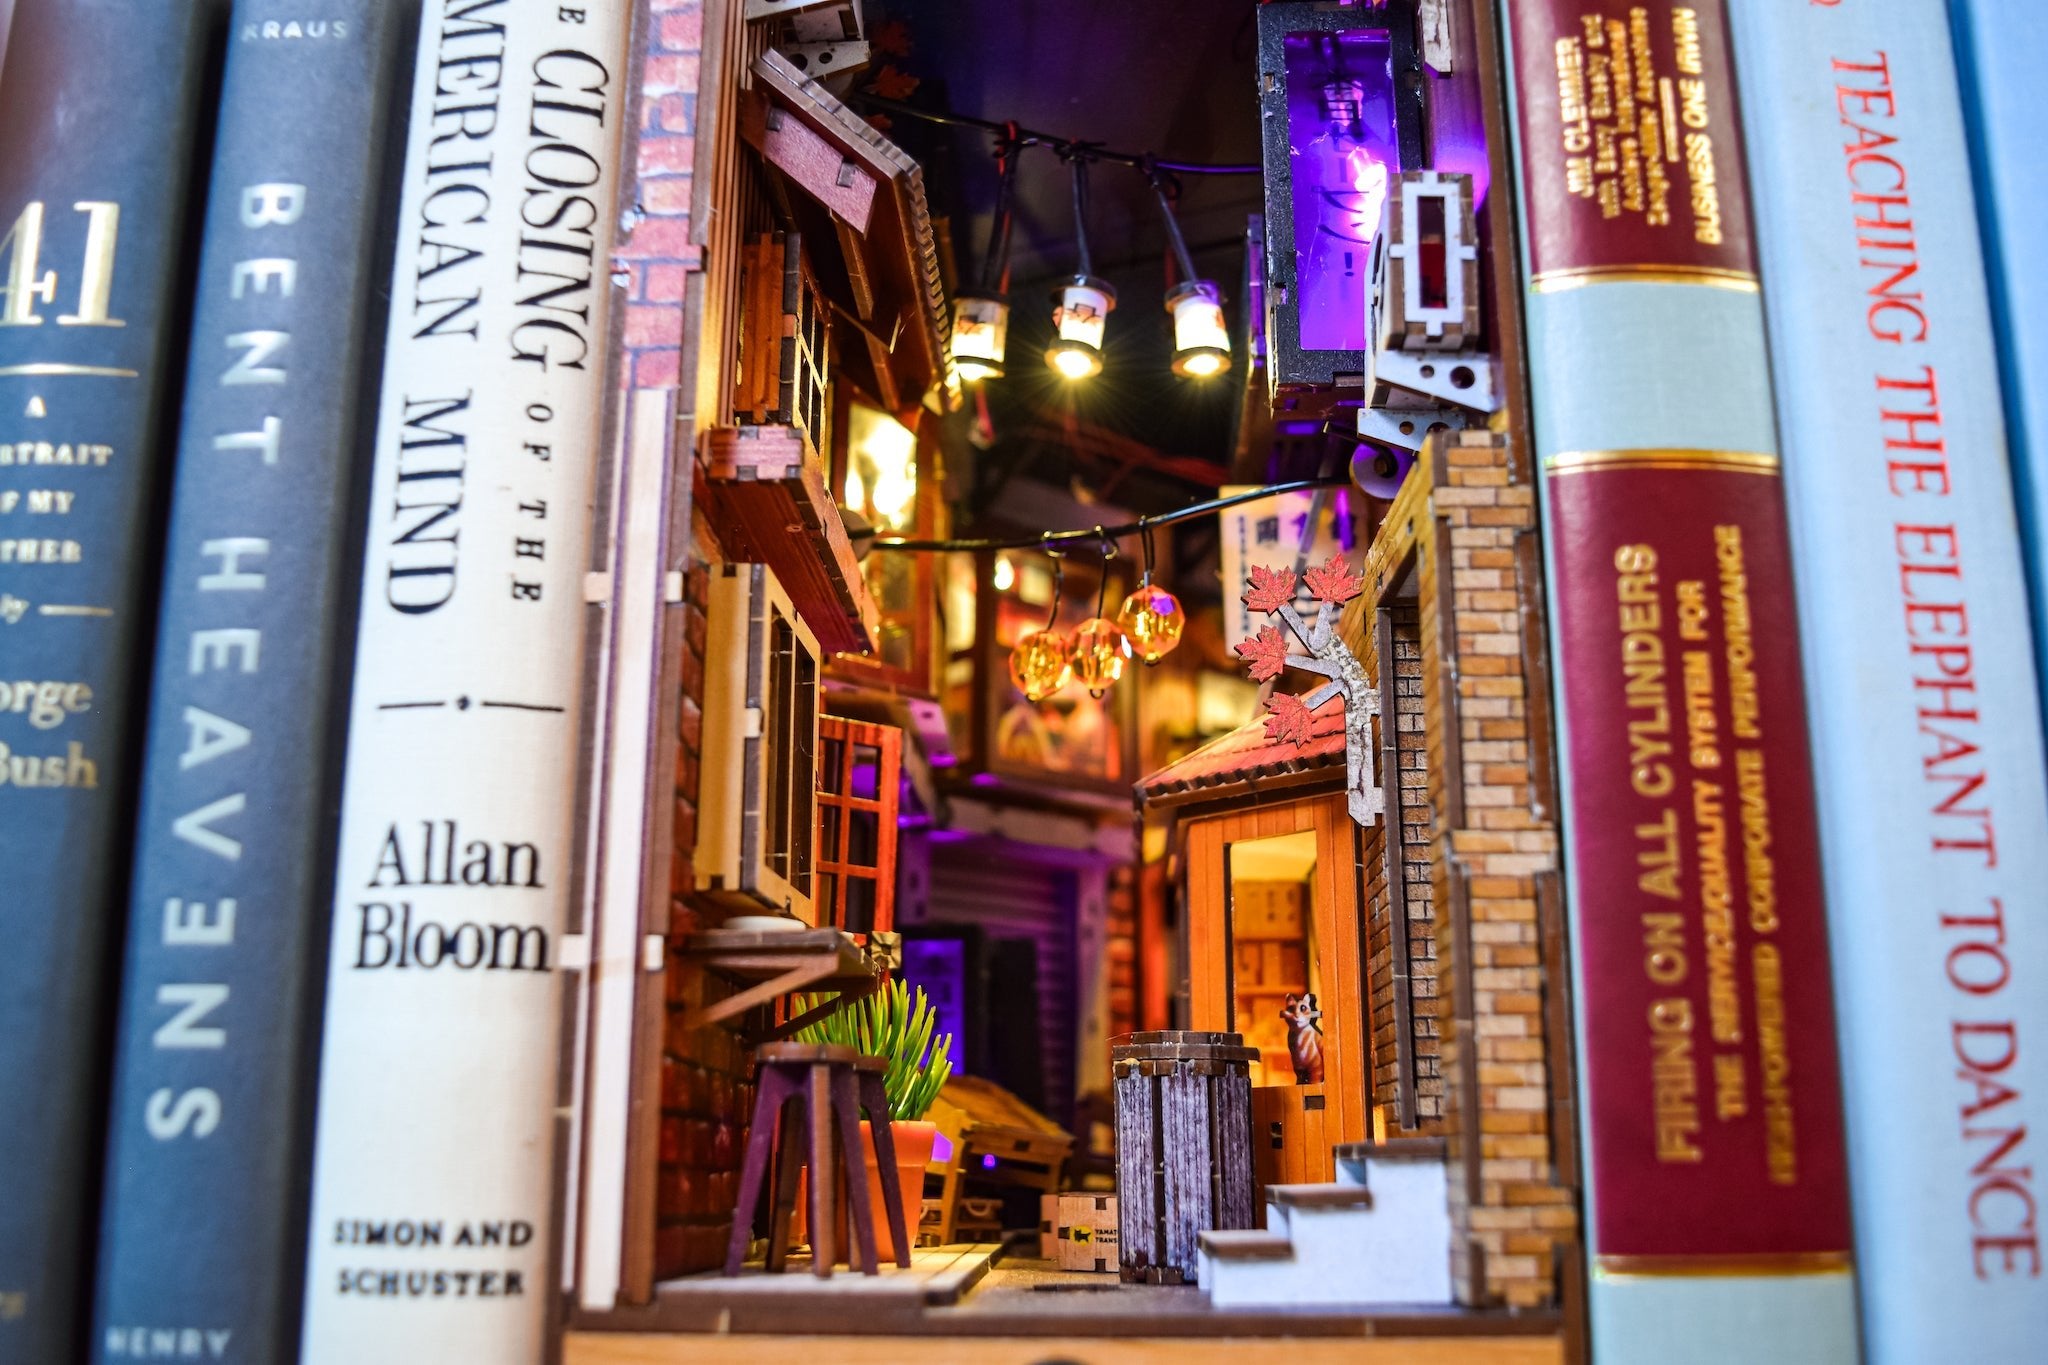 Tokyo Alley Book Nook DIY 3D Kit - Bookshelf Memories - DIY Booknook